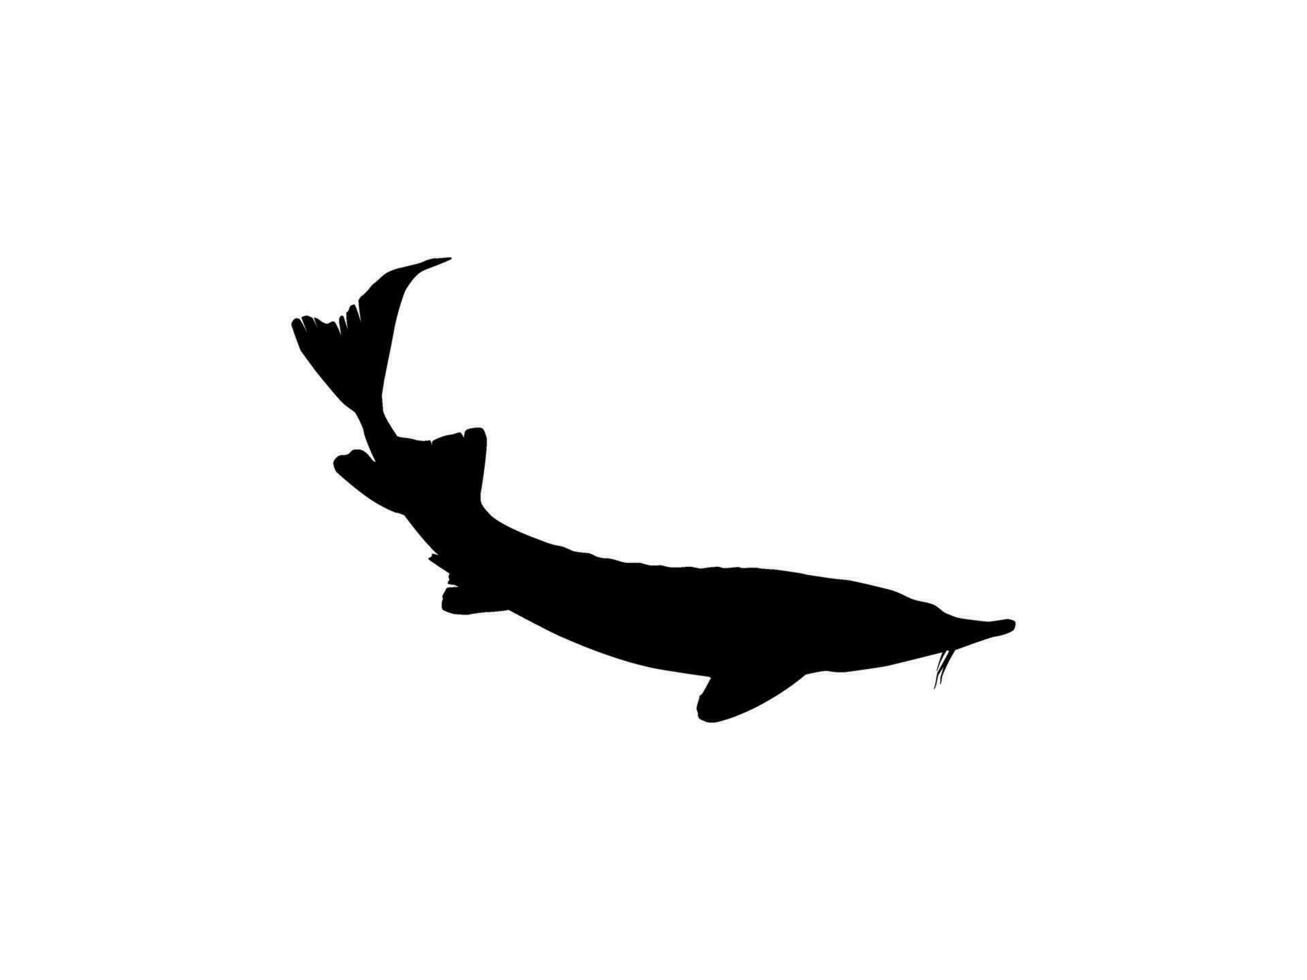 beluga stör eller huso fisk silhuett, fisk som producera premie och dyr kaviar, för logotyp typ, konst illustration, piktogram, appar, hemsida eller grafisk design element. vektor illustration